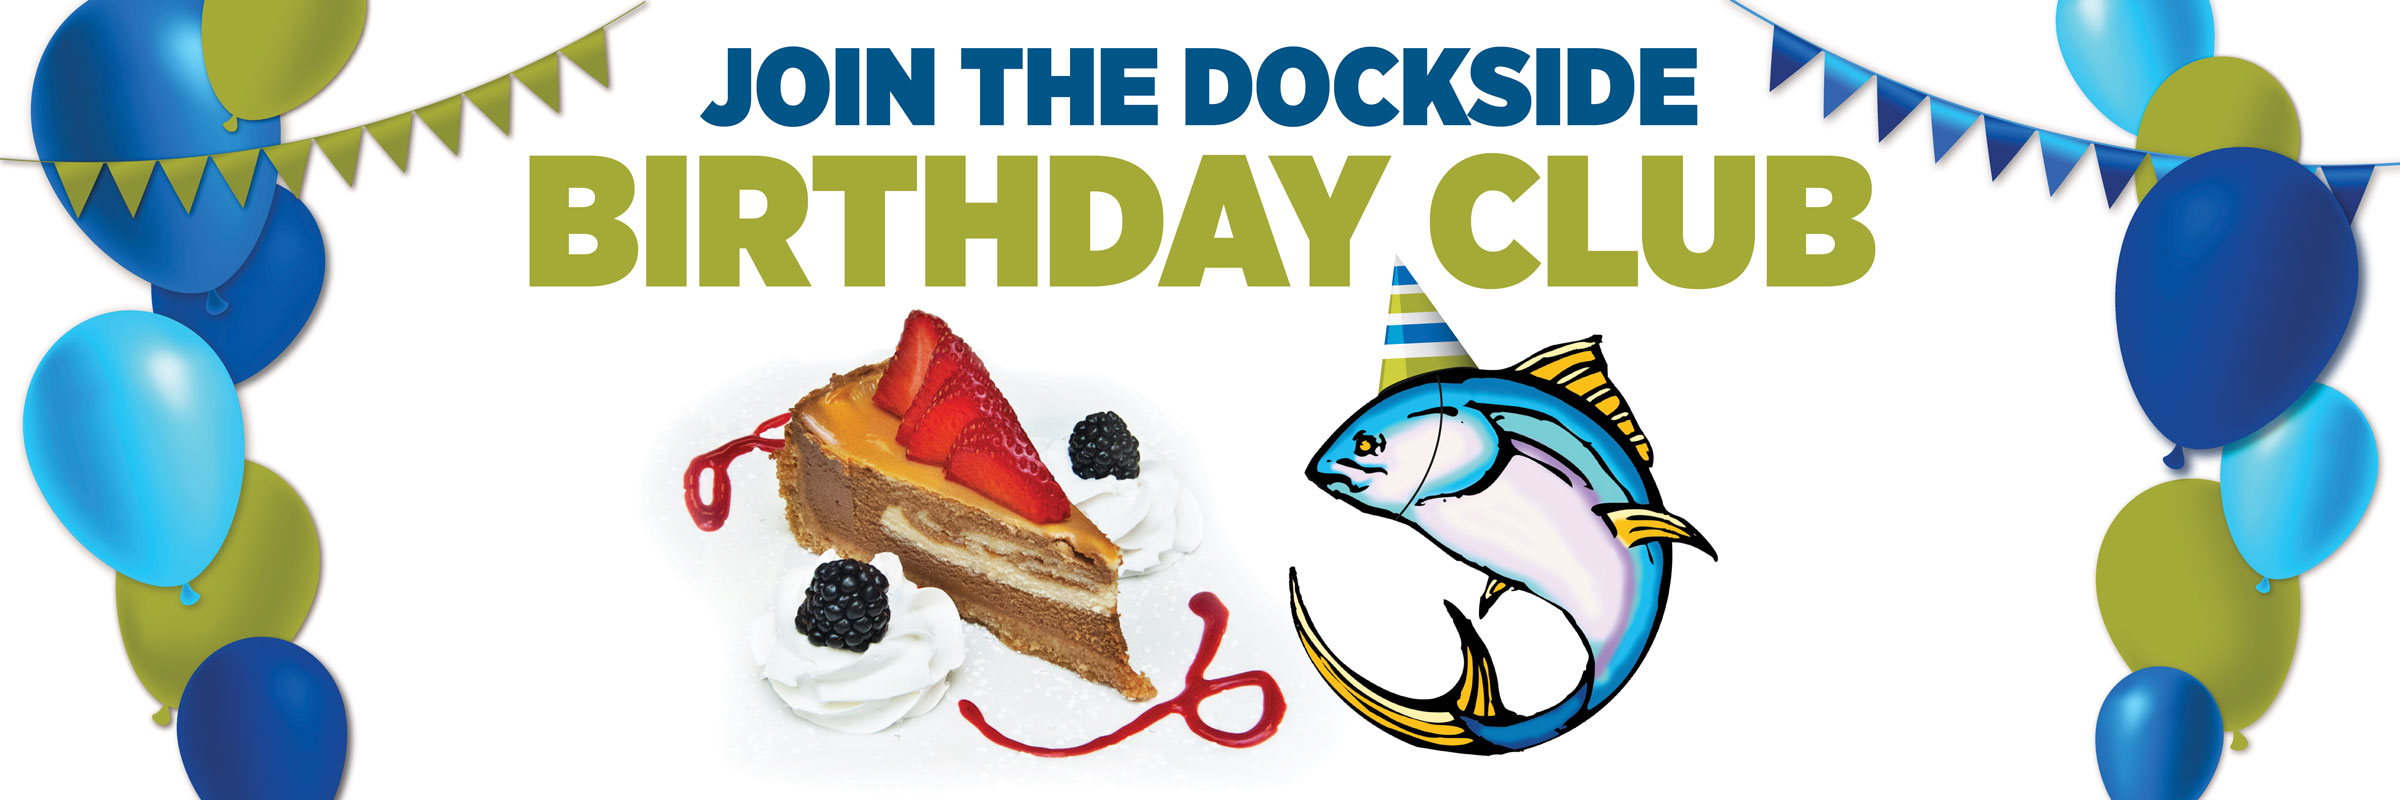 Dockside Birthday Club